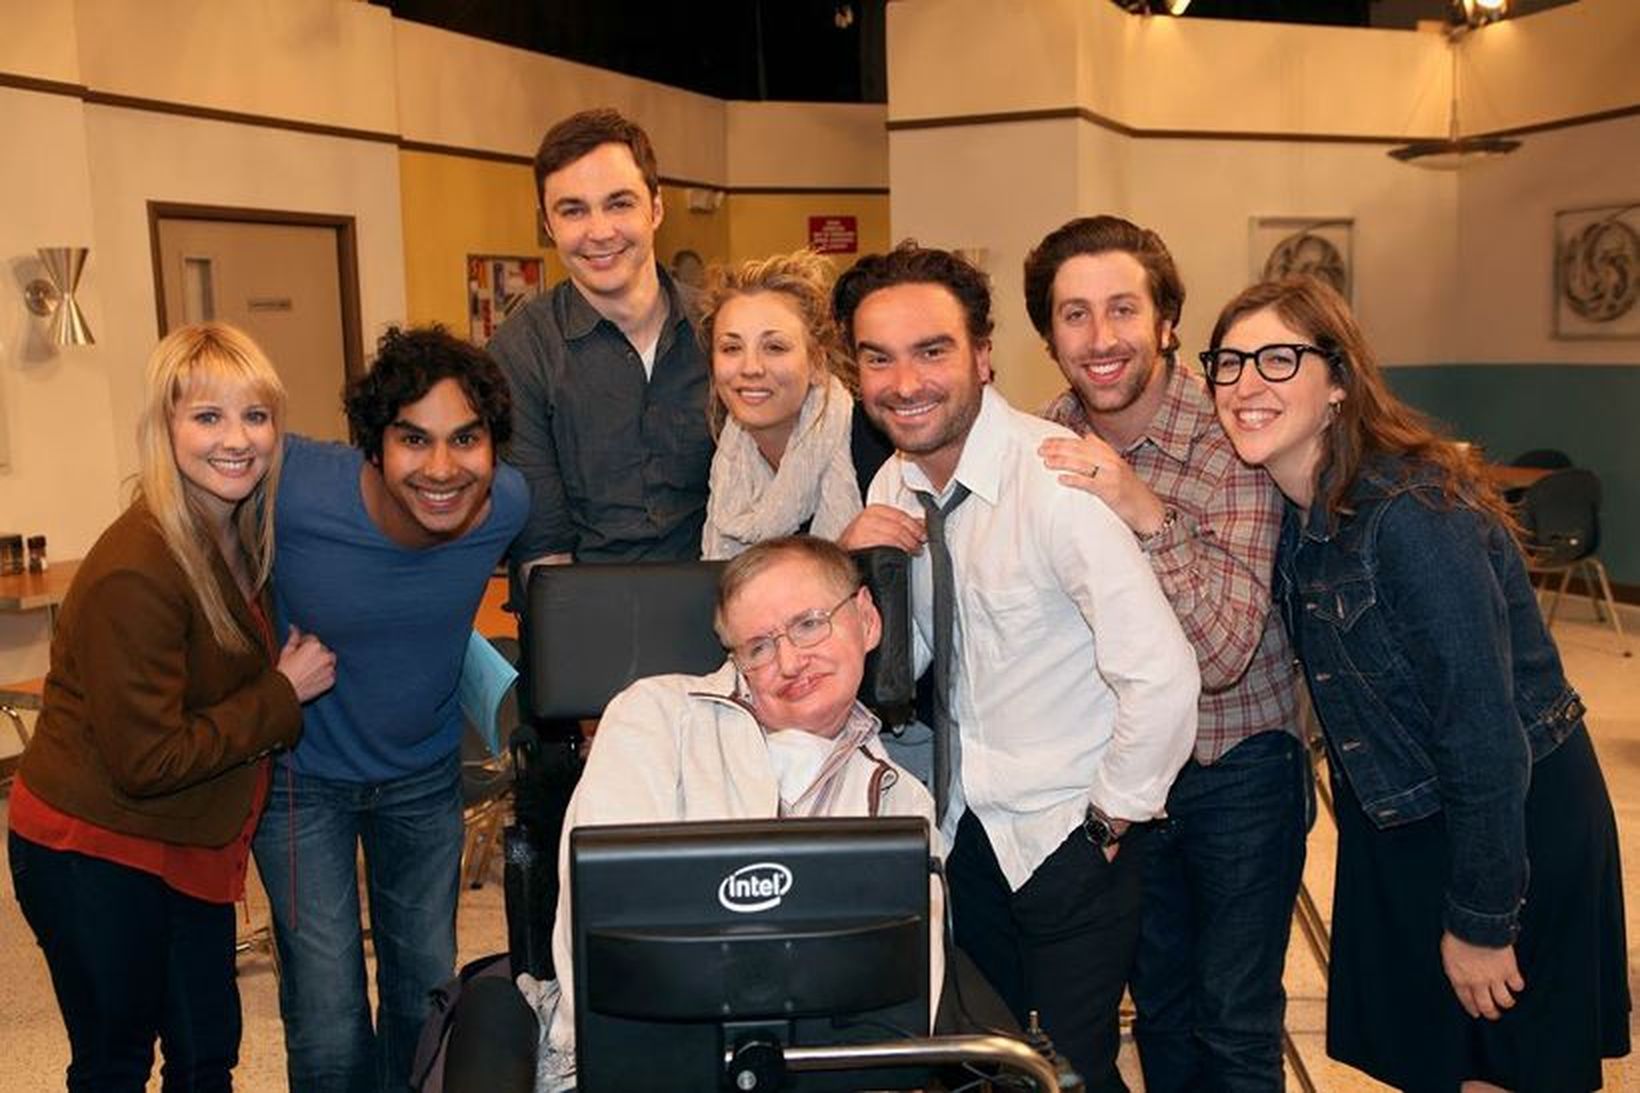 Leikarahópurinn í The Big Bang Theory minnist Hawking með hlýju …